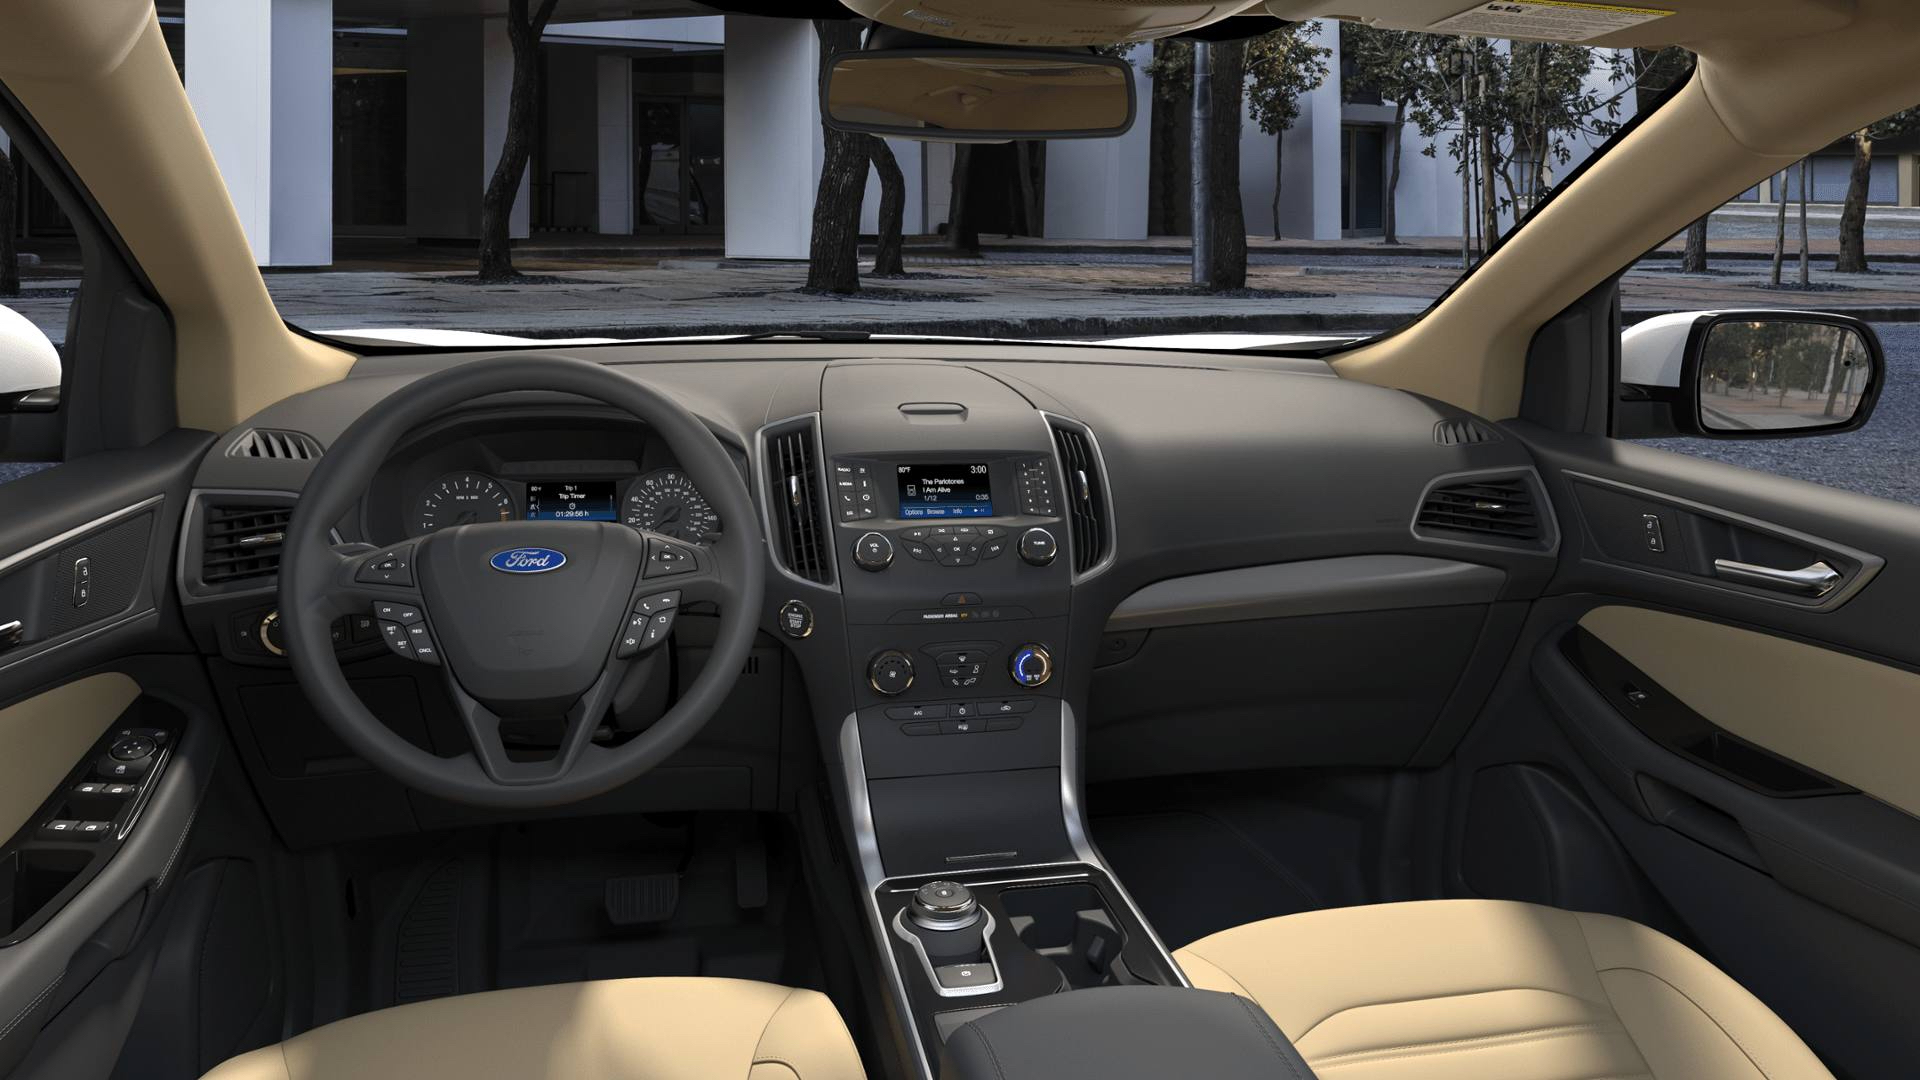 2019 Ford Edge Interior Colors